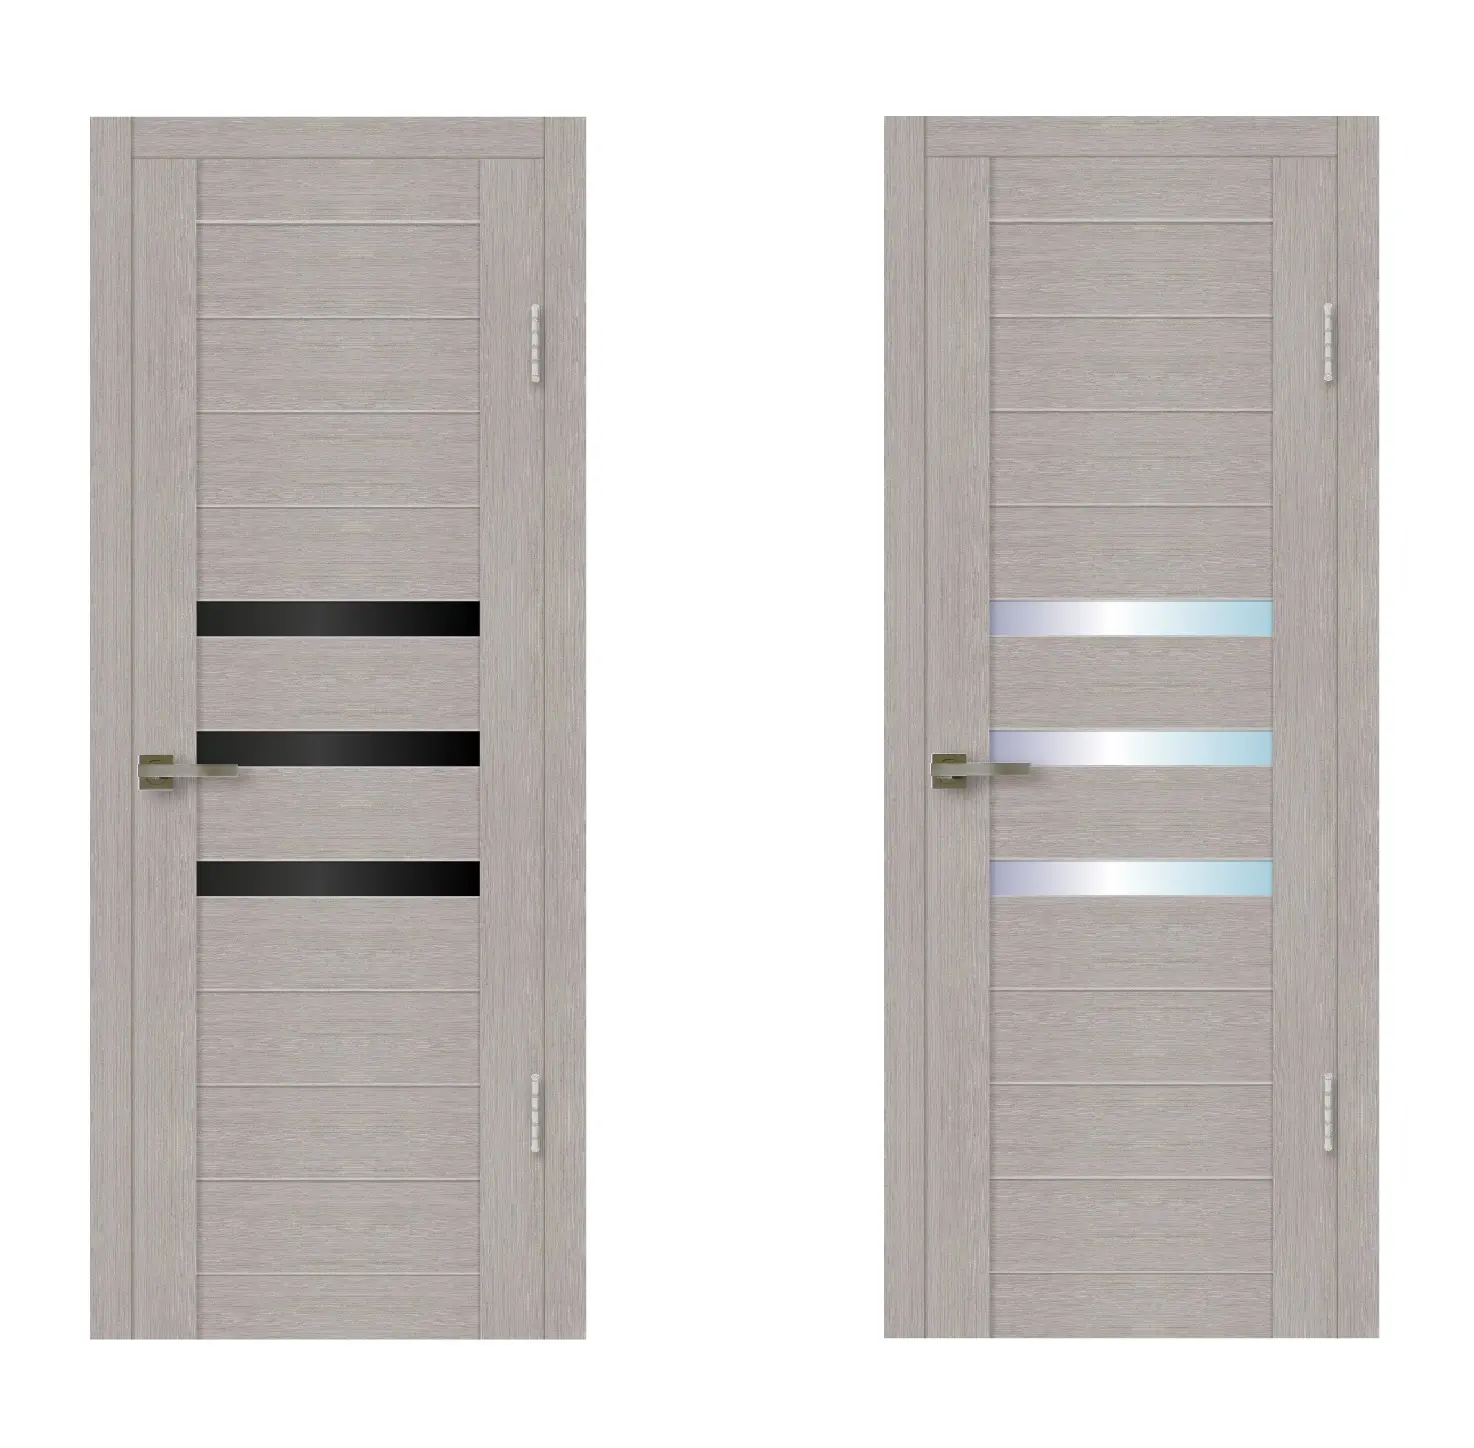 Городская линия 006, наилучшее качество, интерьерная дверь с черным или легким стеклом, эксклюзивный дизайн